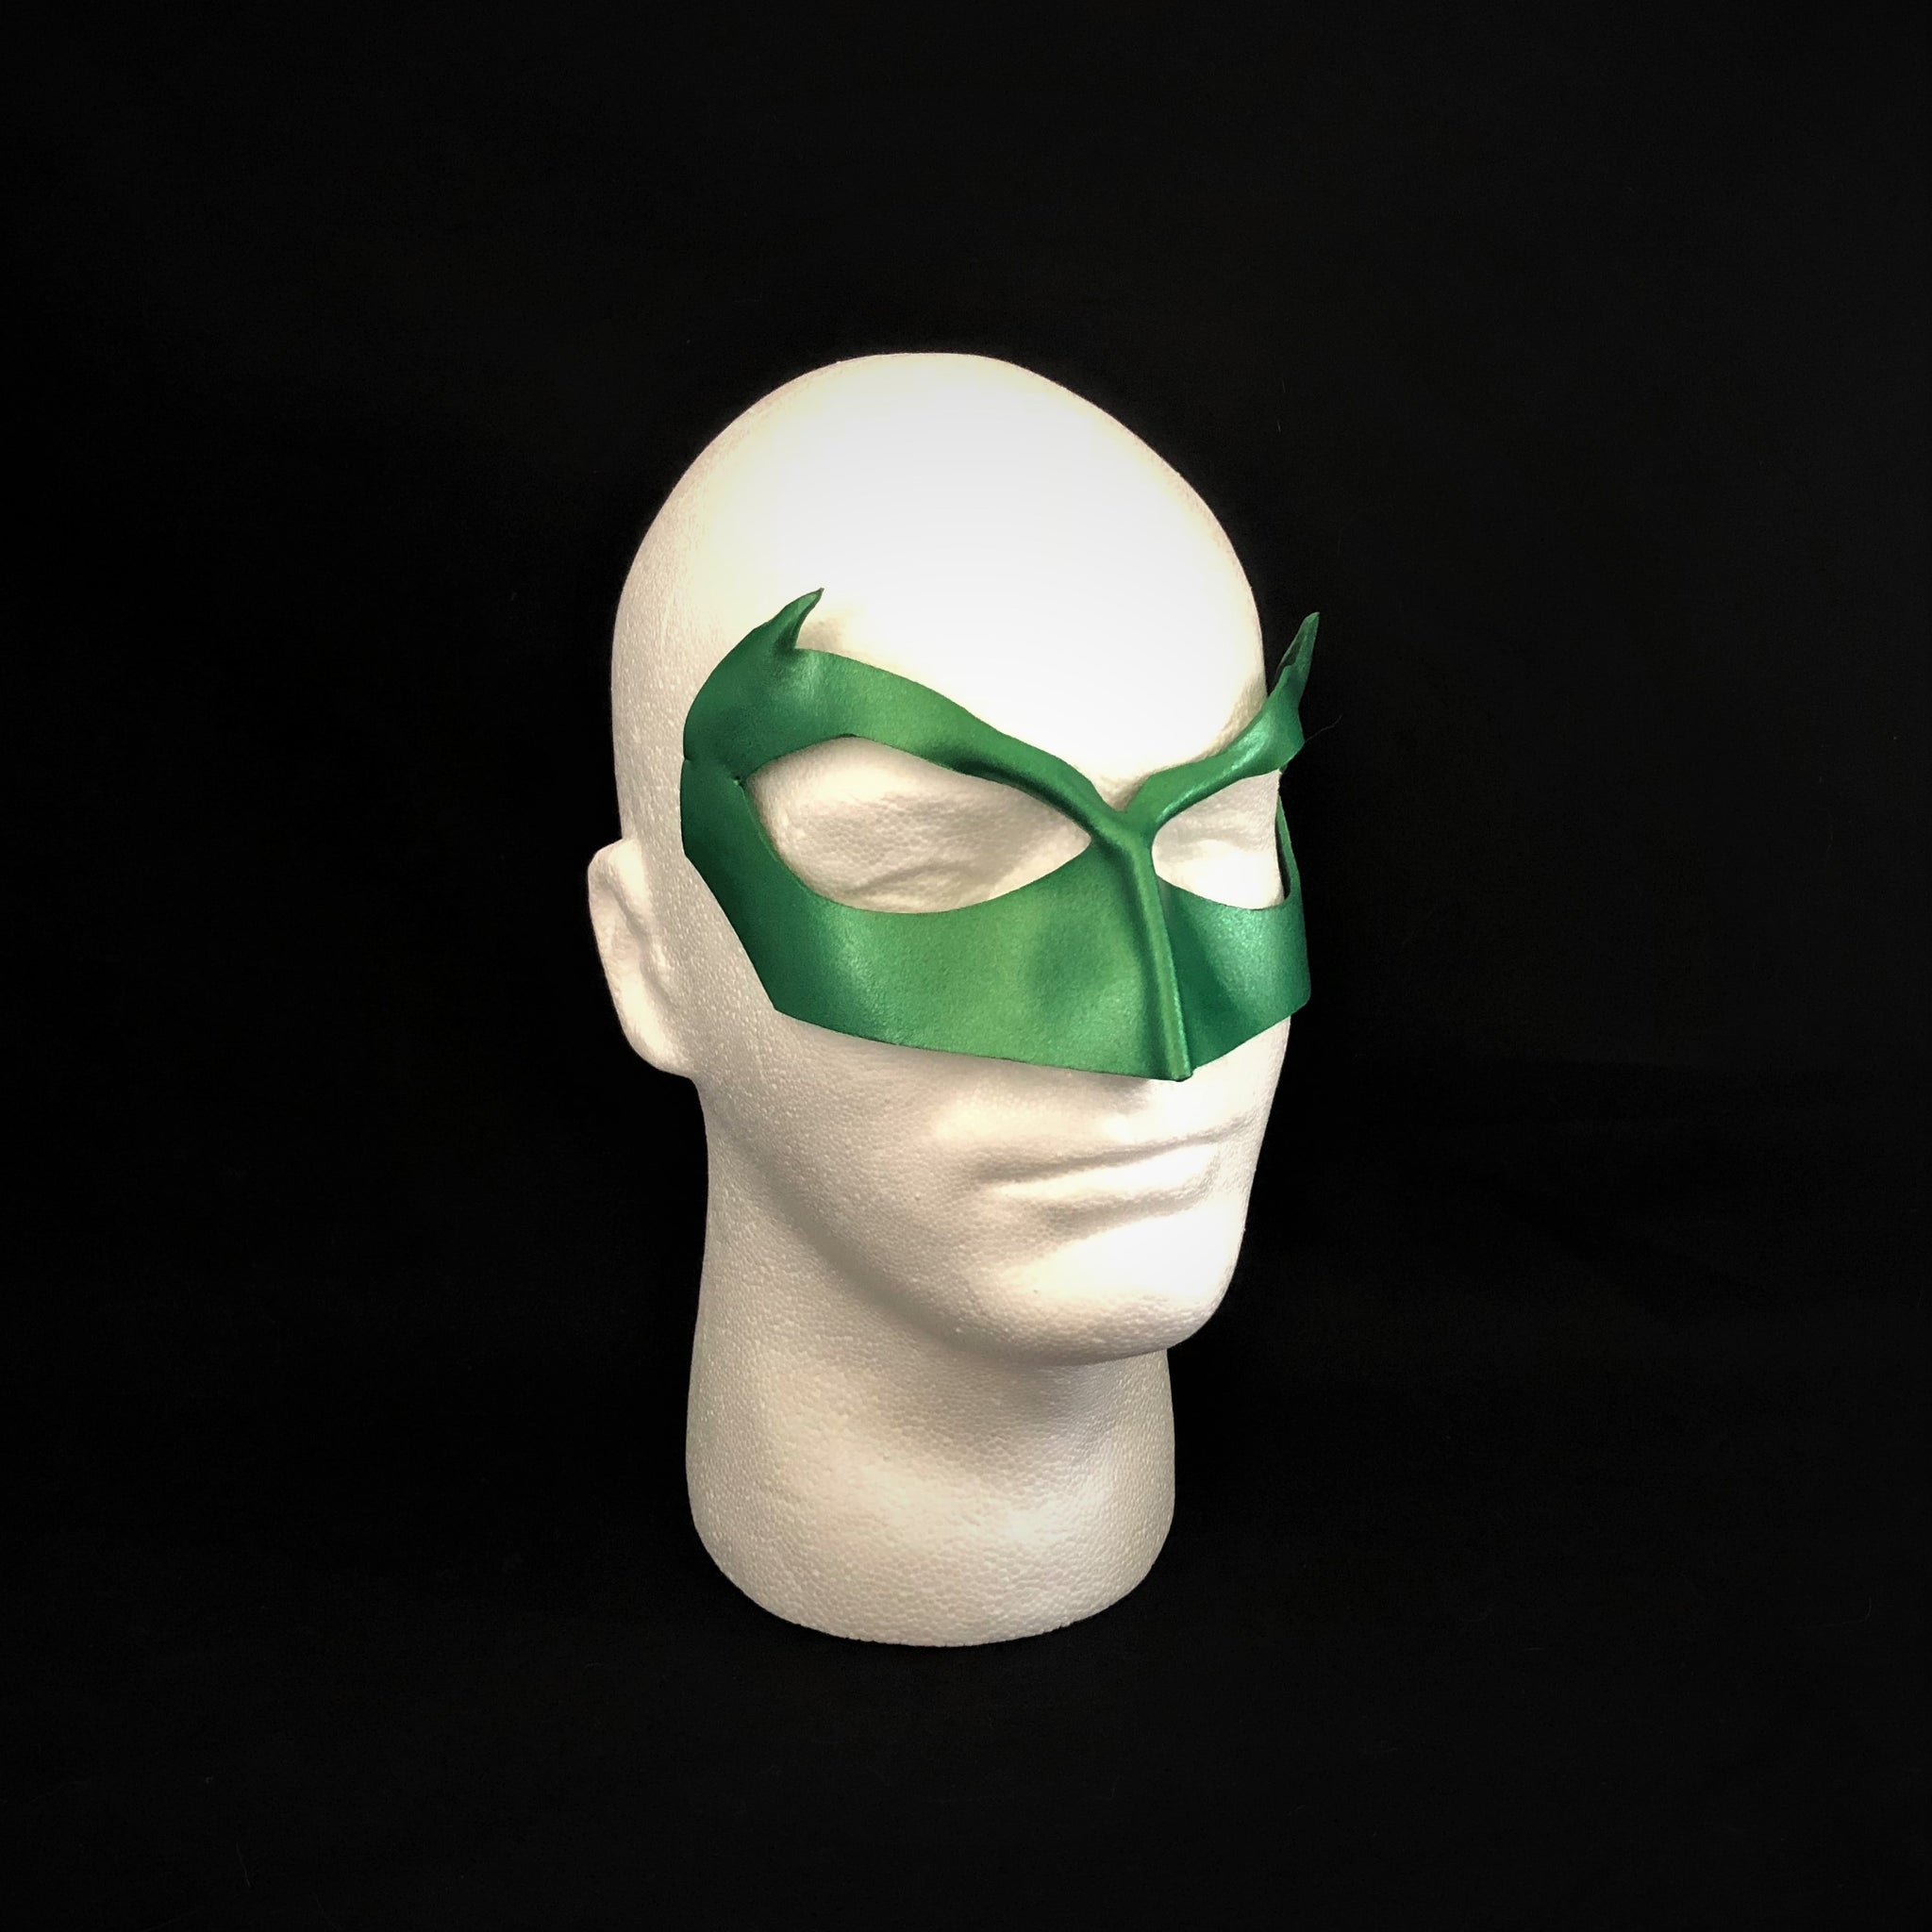 Green Lantern Mask